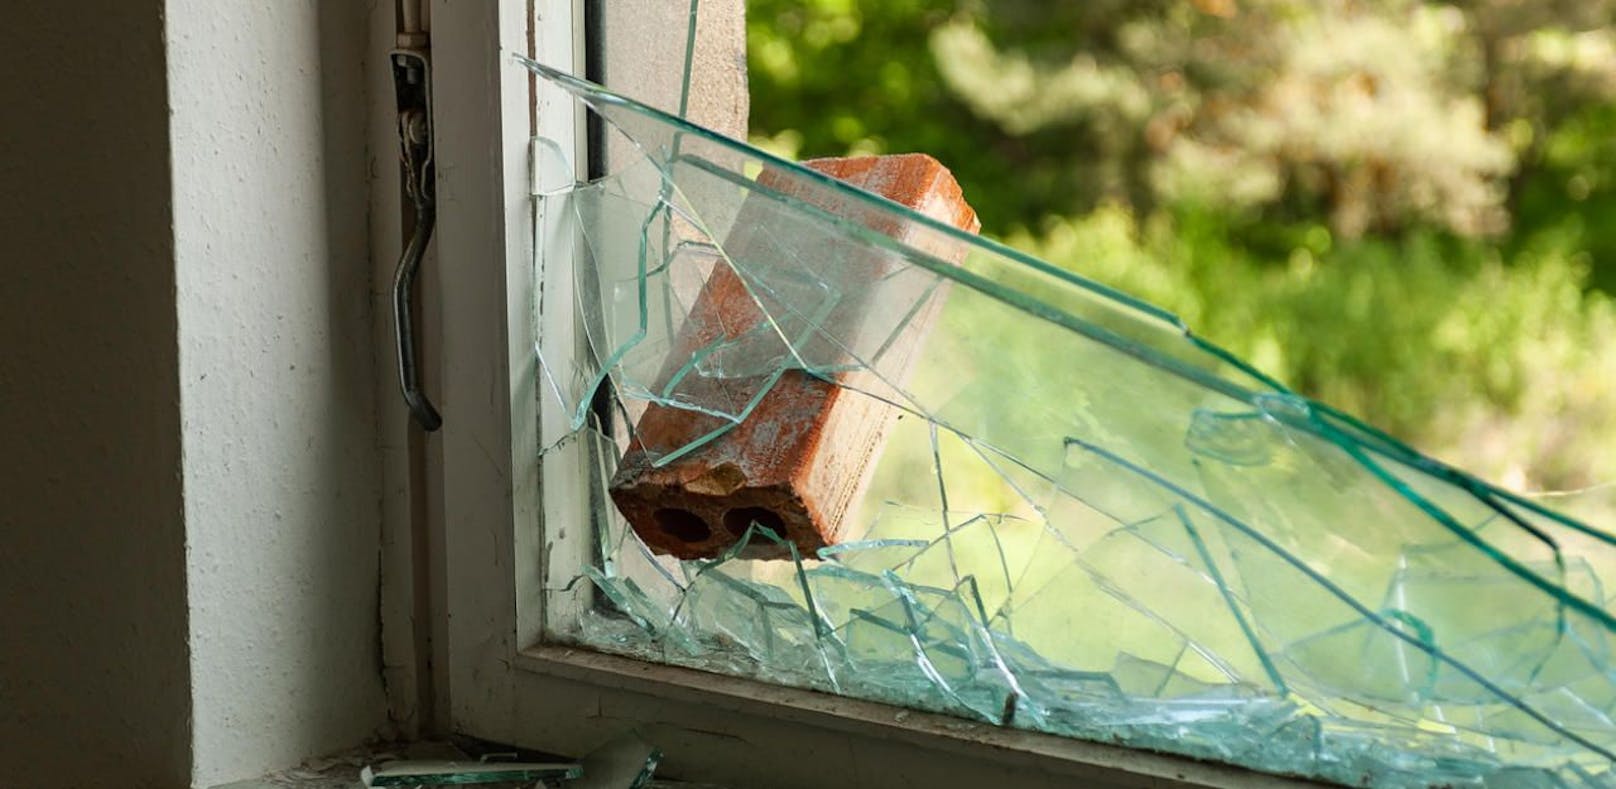 Der Mann warf einen Ziegelstein in das Fenster und ergriff die Flucht.